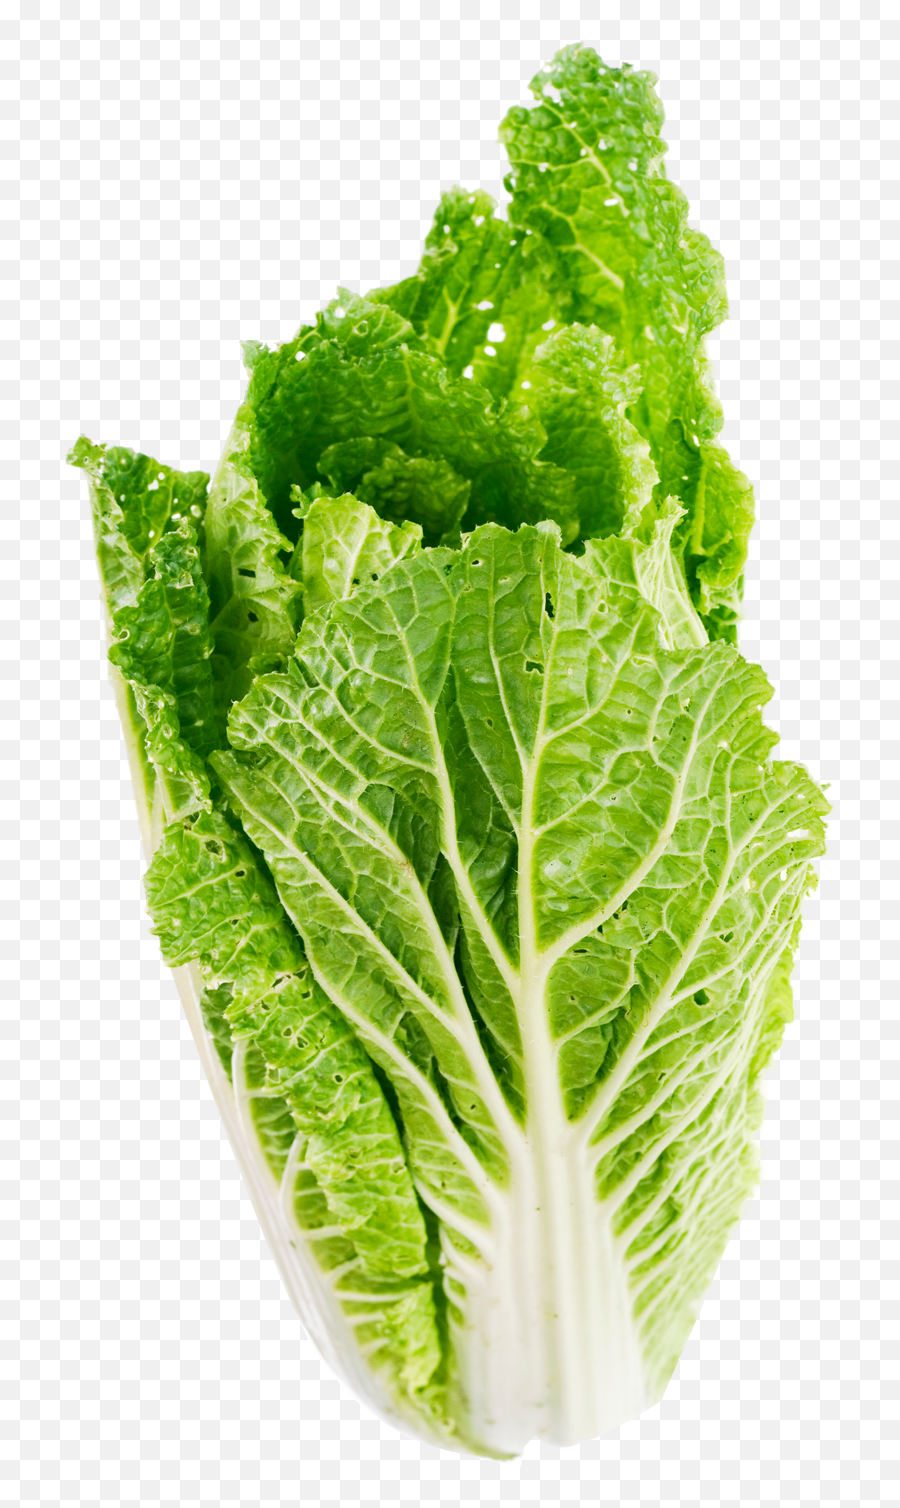 Download Lettuce Leaf Png Image For Free - Lettuce Png,Leaf Transparent Background